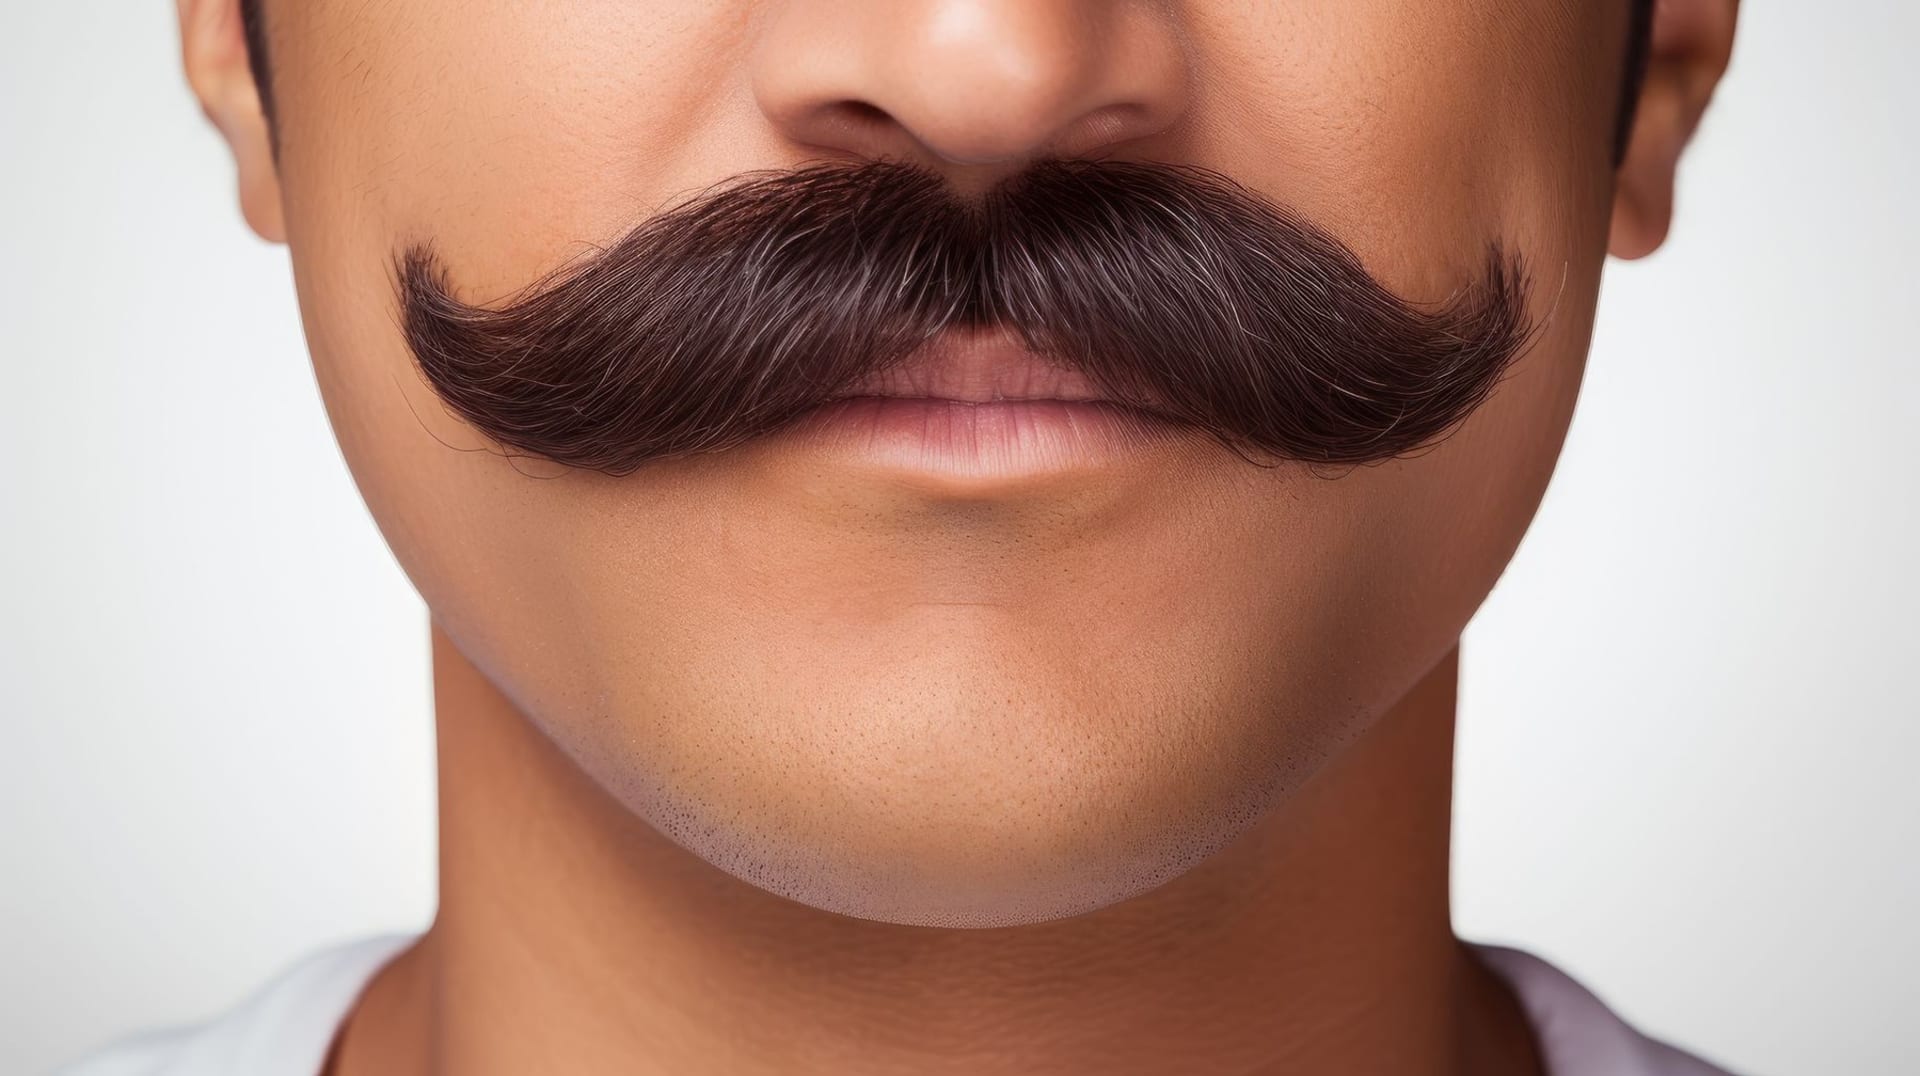 K vyjádření podpory charitativní iniciativě Movember si stačí nechat narůst knírek.